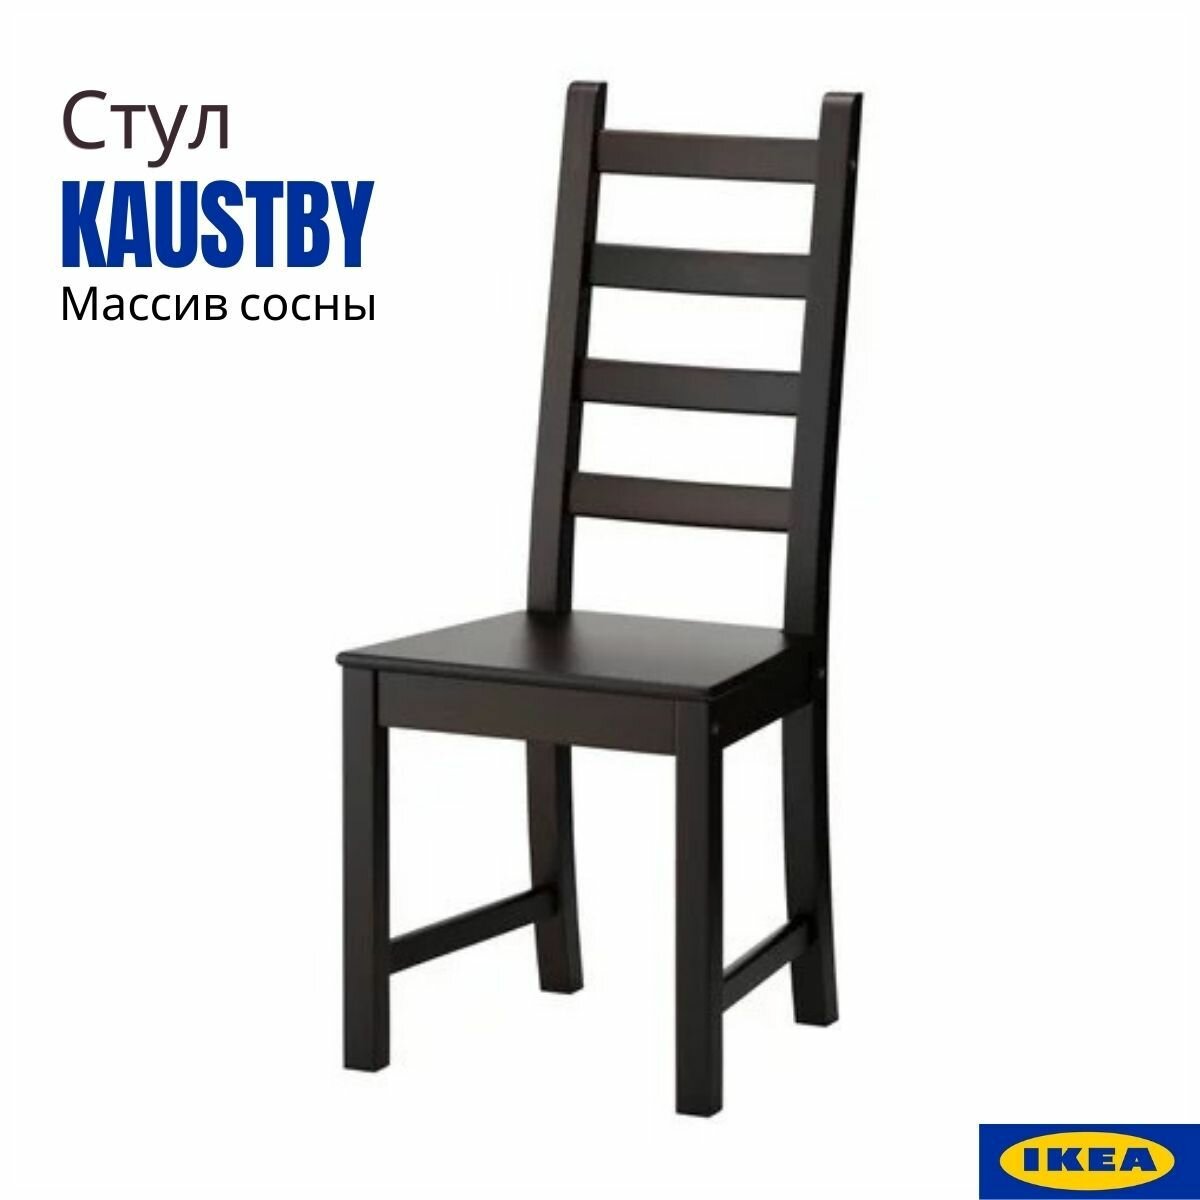 Стул икеа Каустби (KAUSTBY IKEA). Стул кухонный, коричнево-чёрный, 1 шт. Стул для кухни